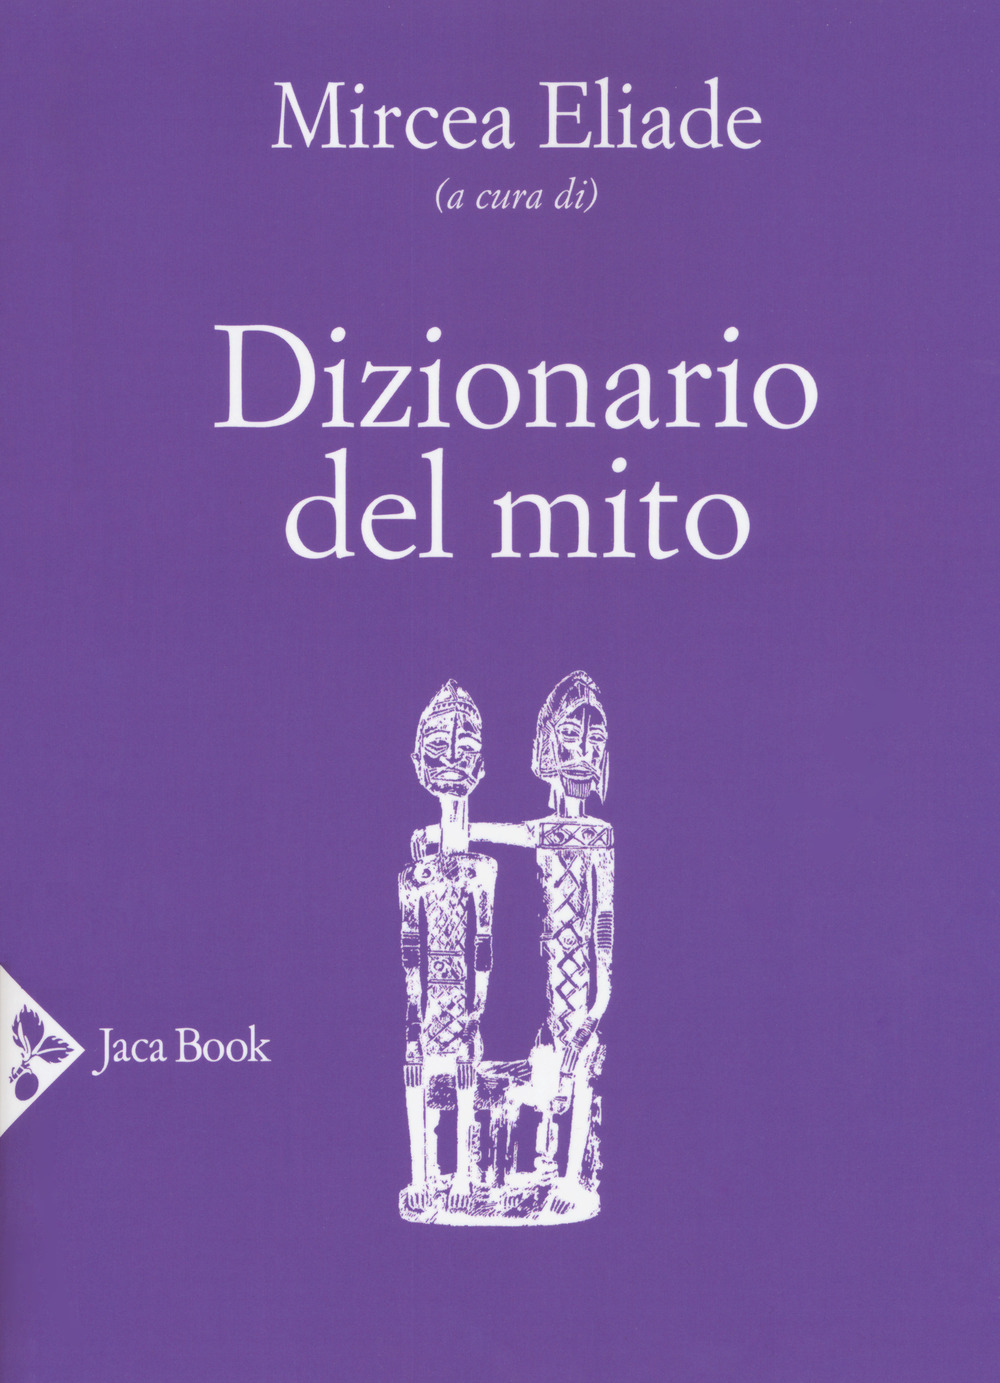 Image of Dizionario del mito